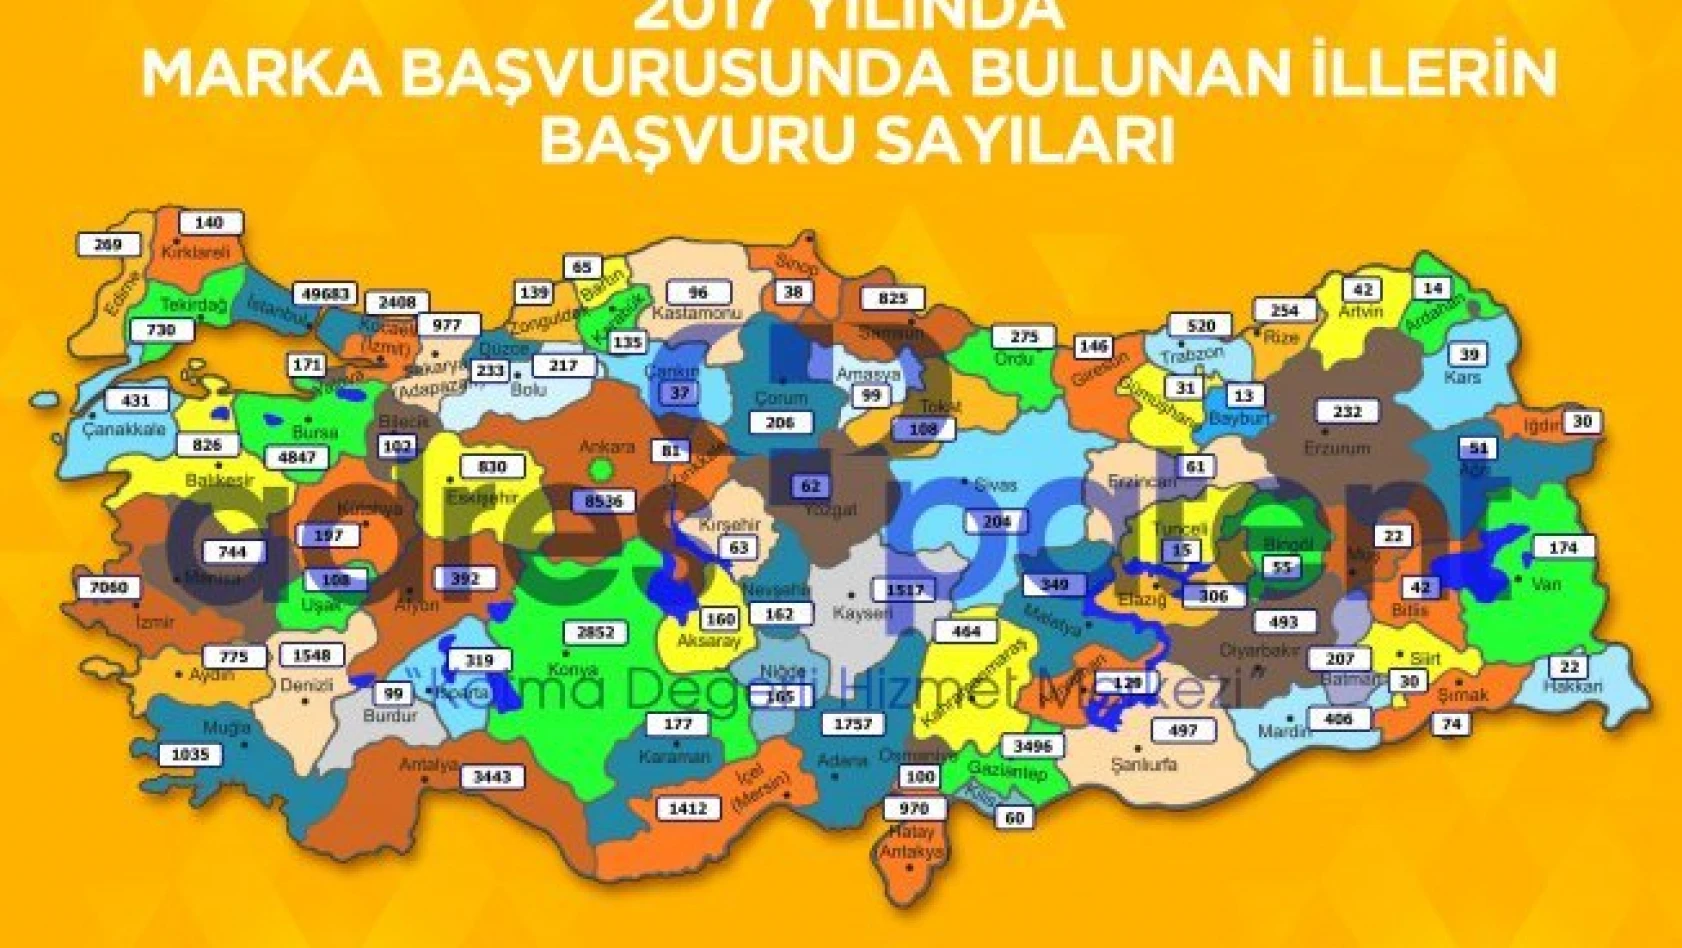 Türkiye'nin şehir şehir marka başvuru sayısı açıklandı